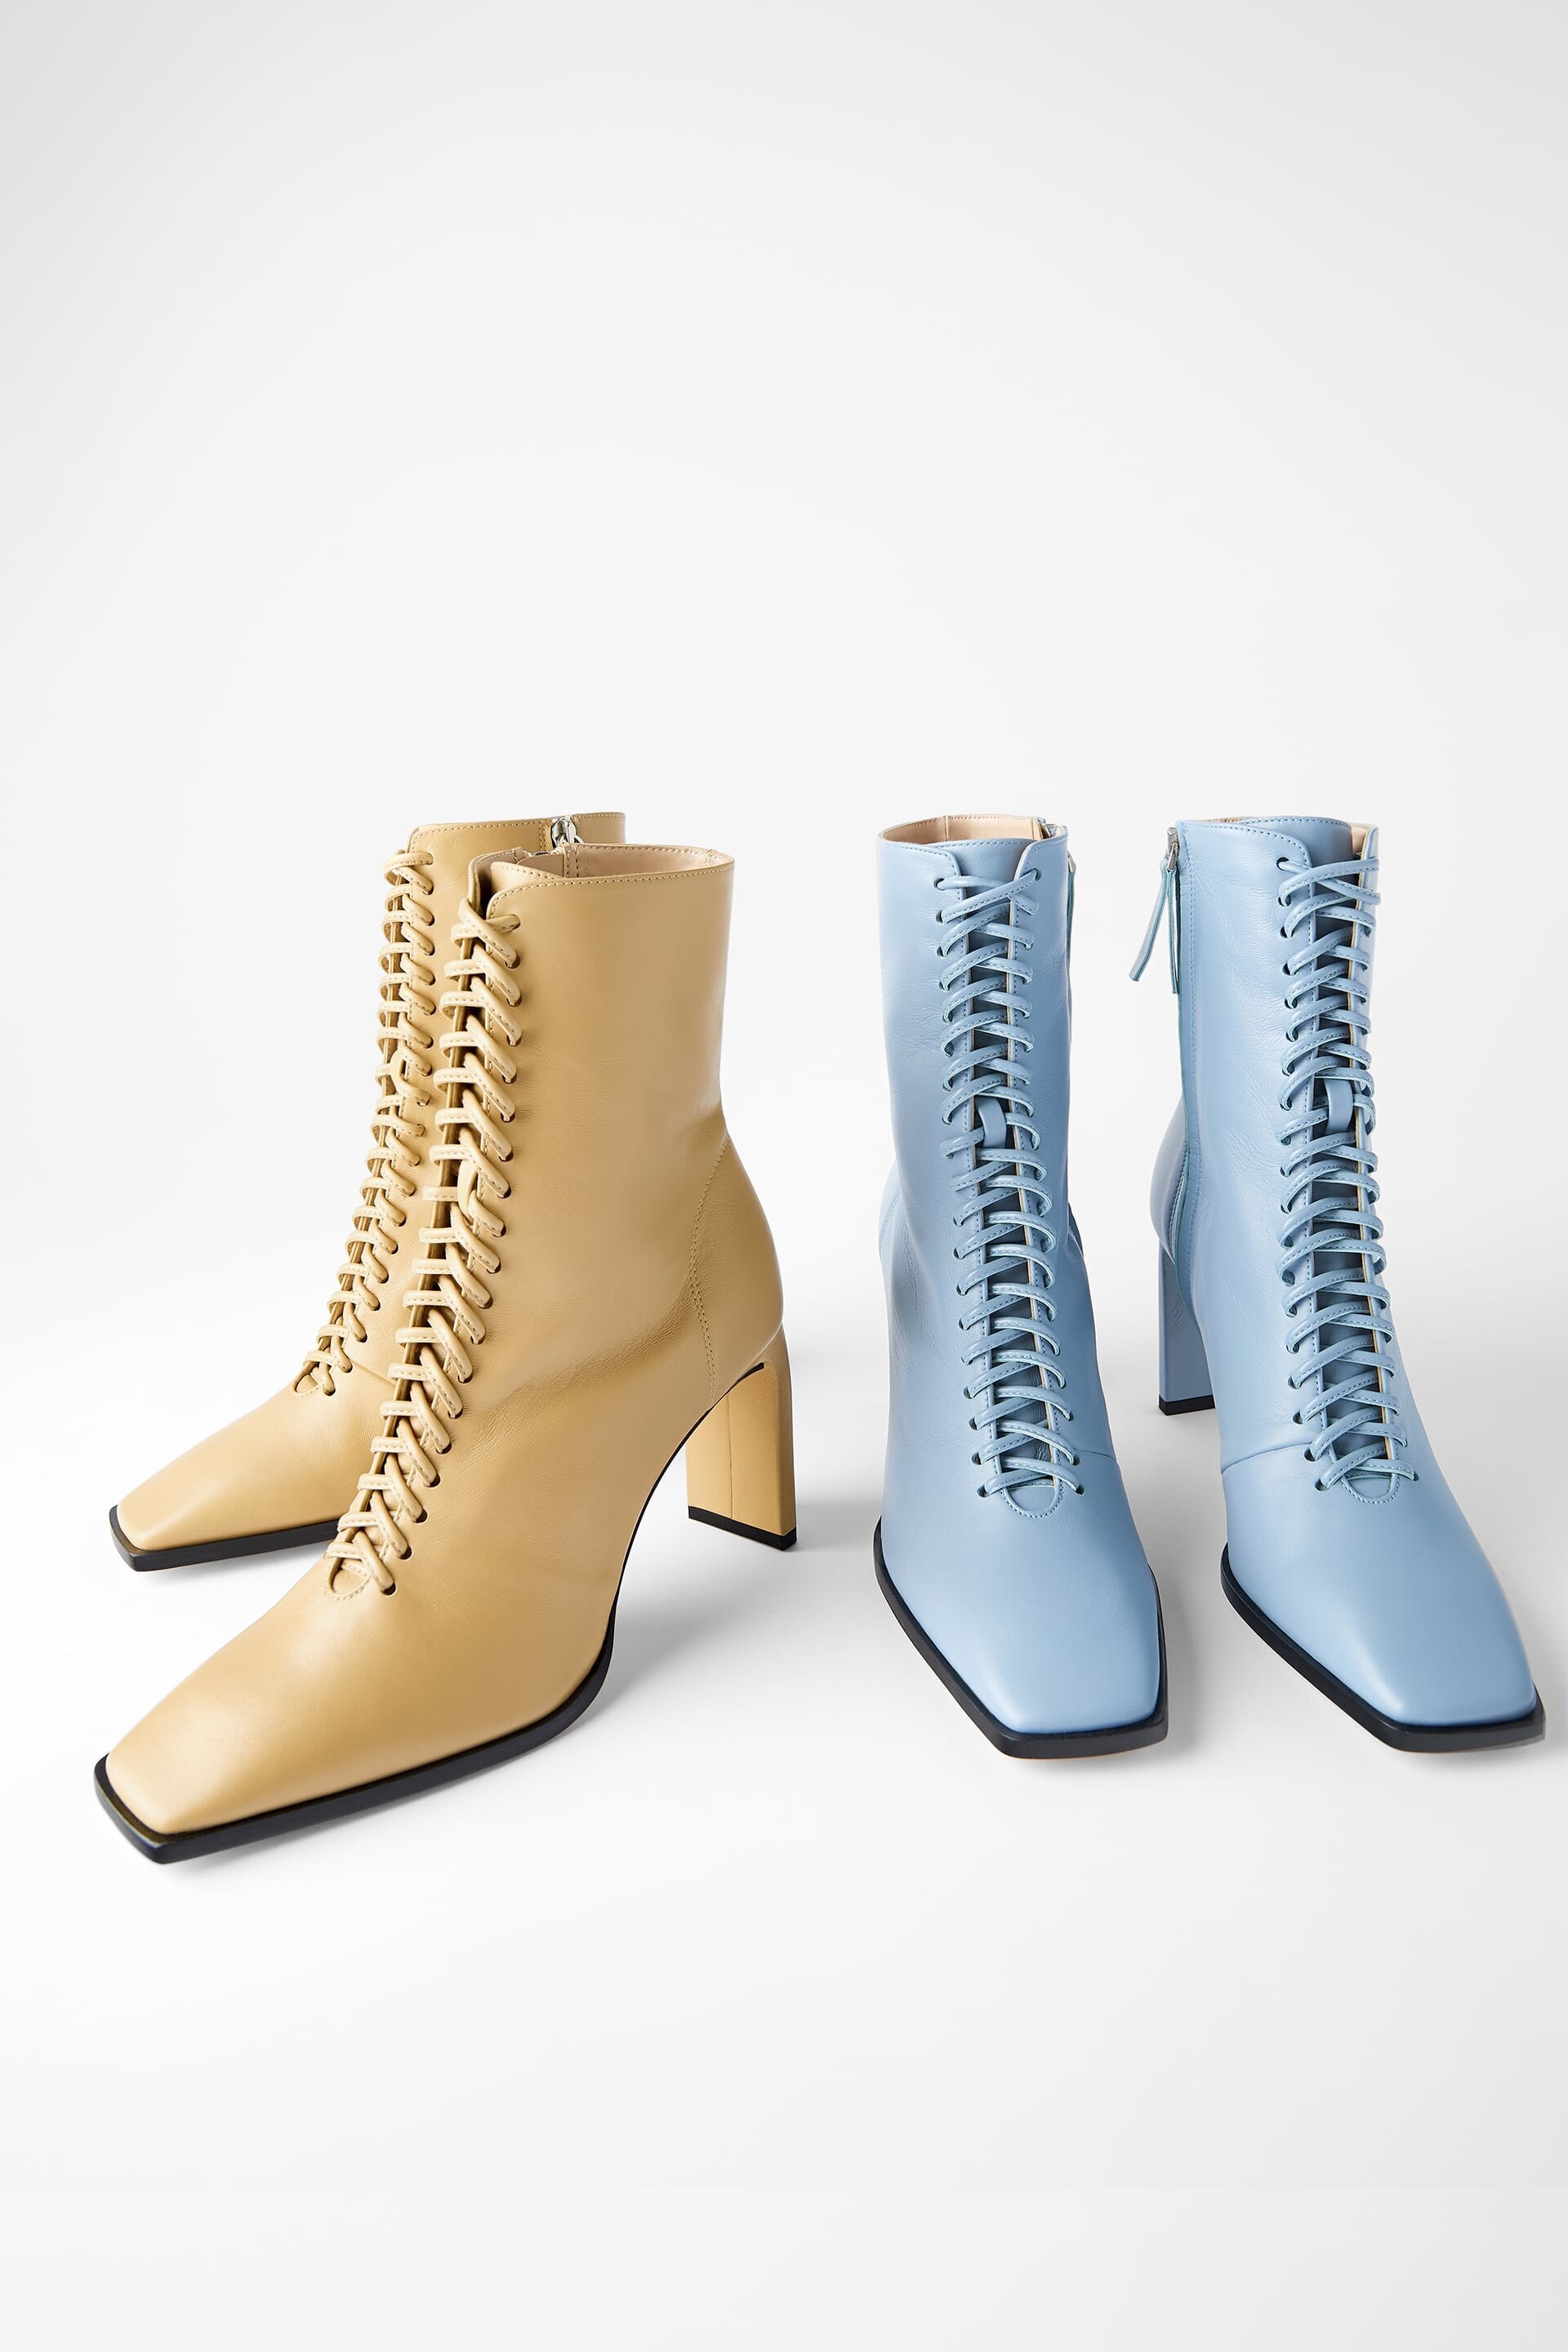 Sellout Edwardian-Style Zara Boots 